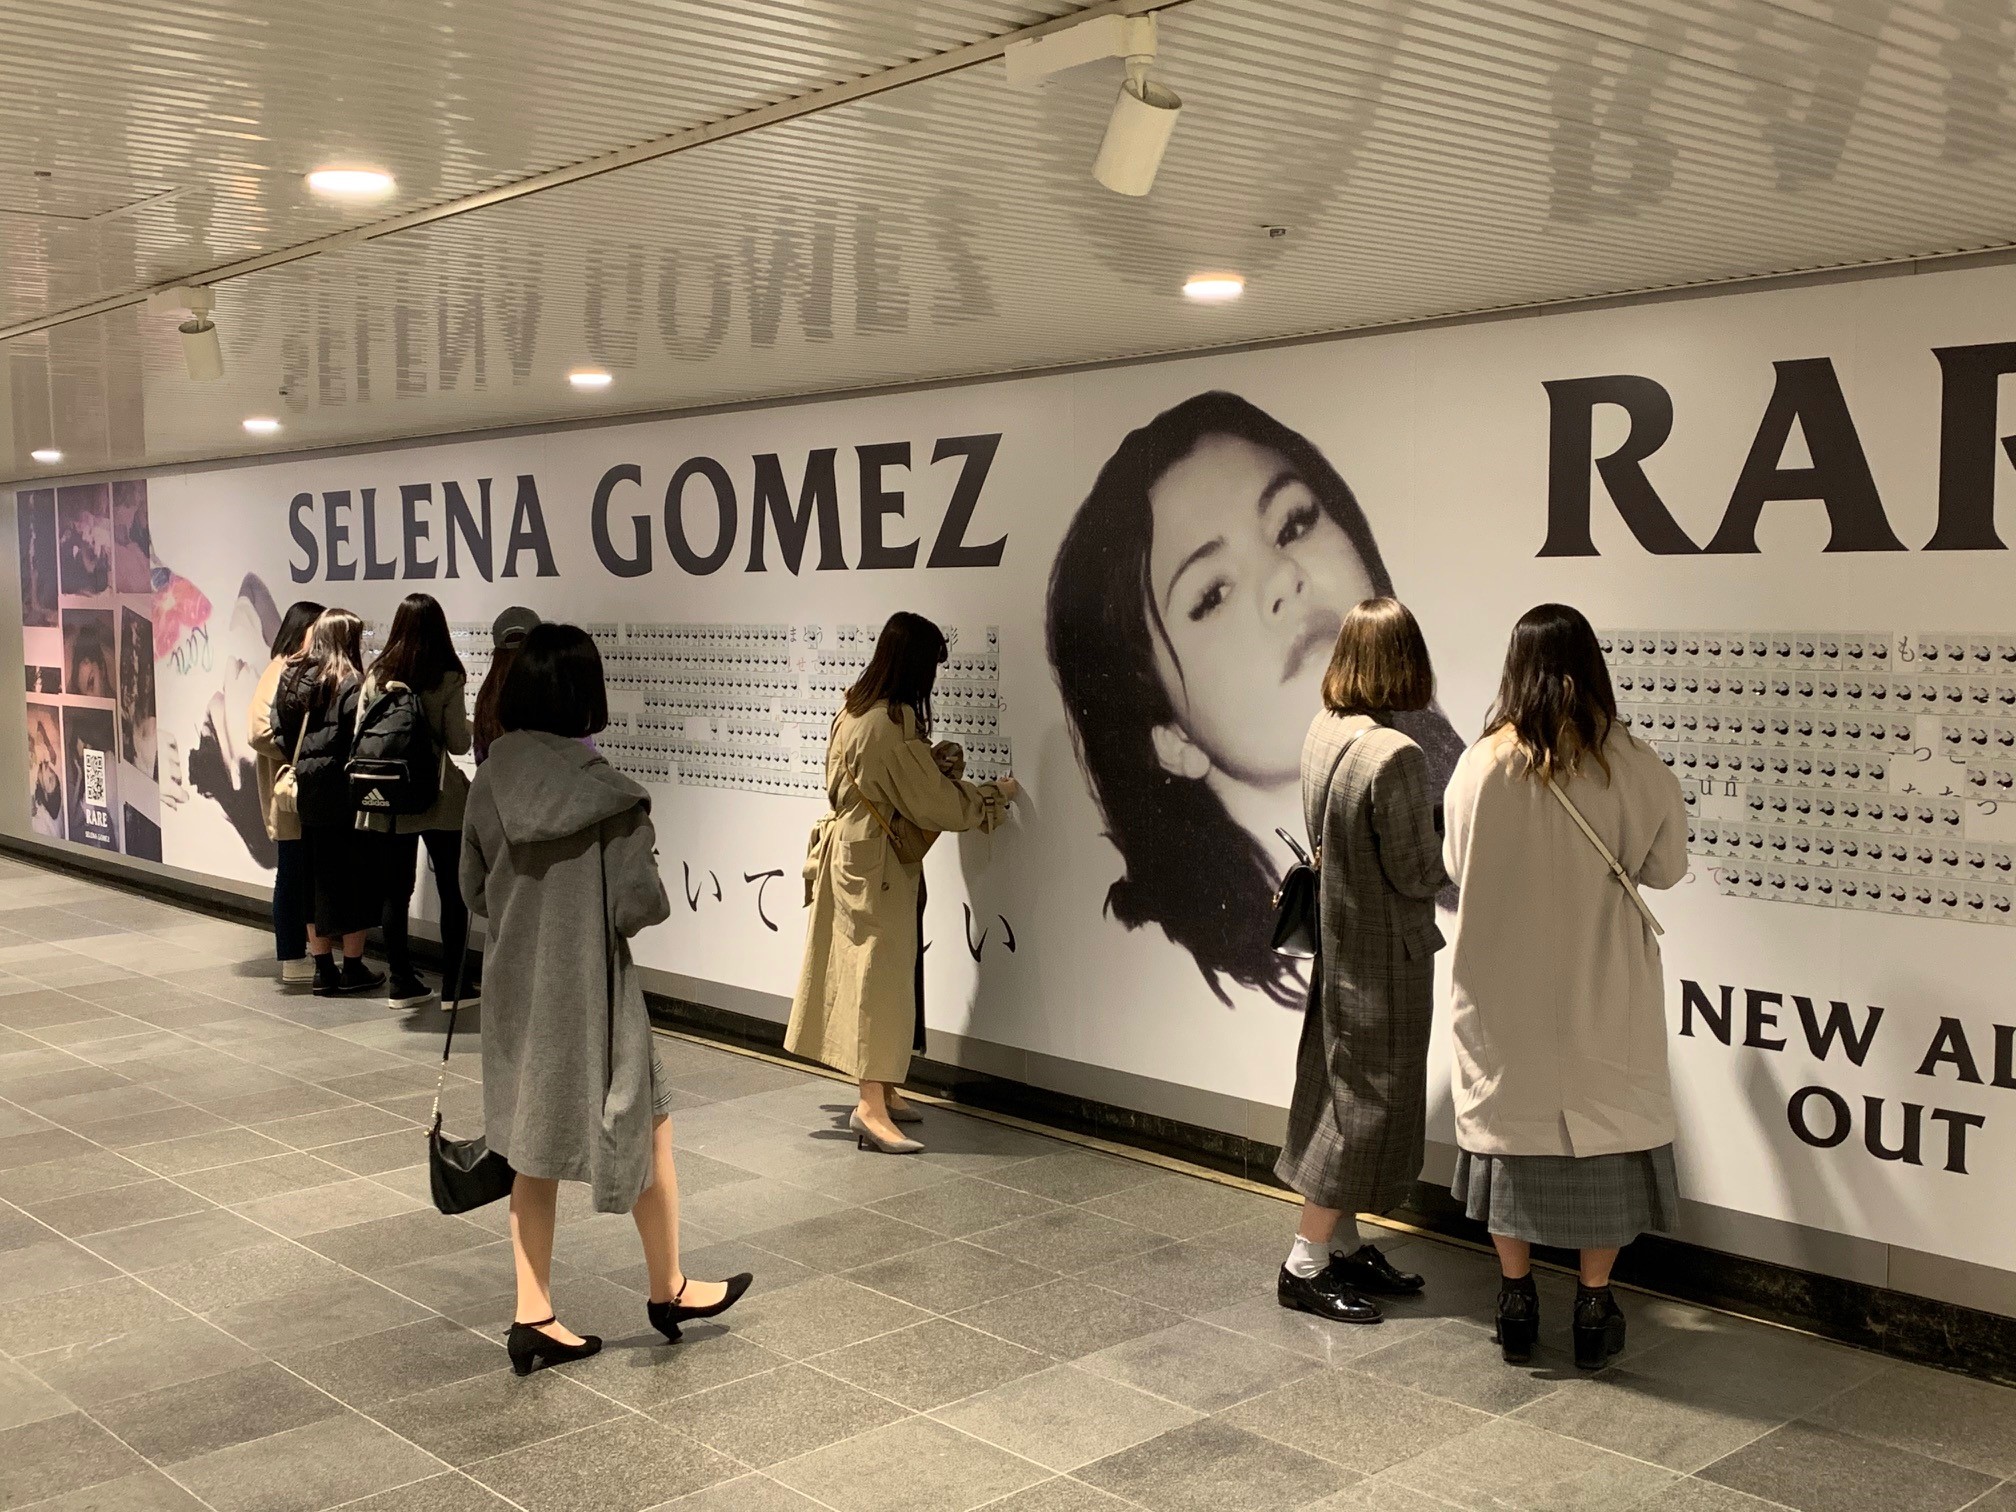 セレーナ ゴメス アルバム レア Rare の巨大広告が渋谷に登場 Twitter Instagramでのキャンペーンも実施中 ユニバーサル ミュージック合同会社のプレスリリース